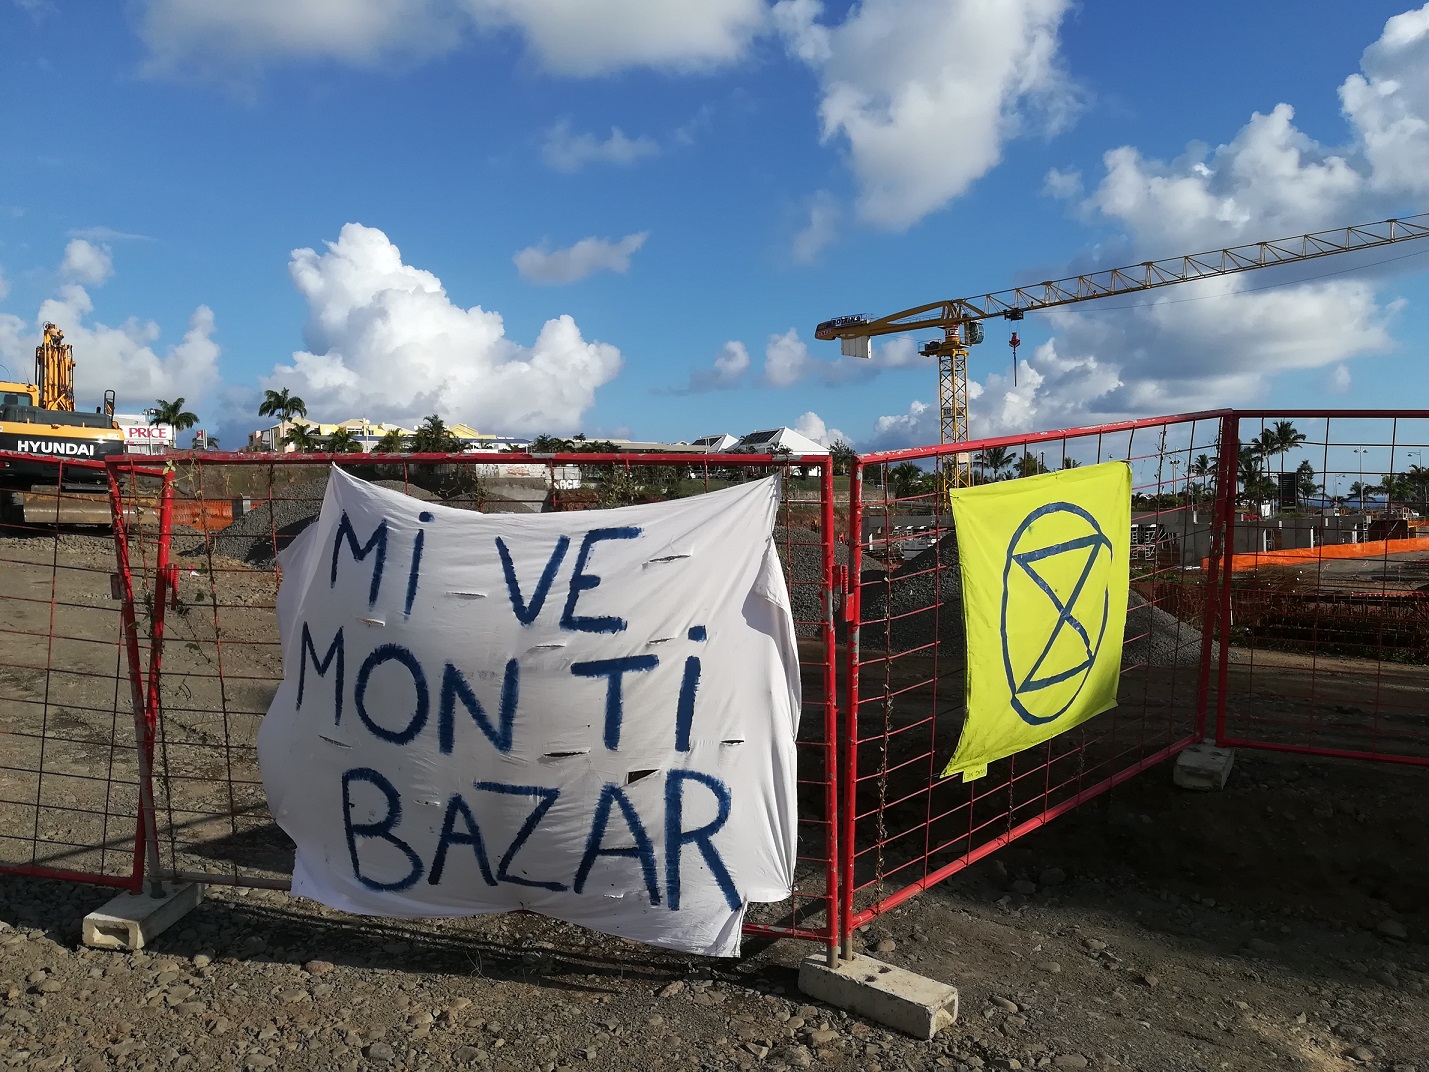 📷 St-Pierre: Action de rebellion sur la future zone commerciale Casabona